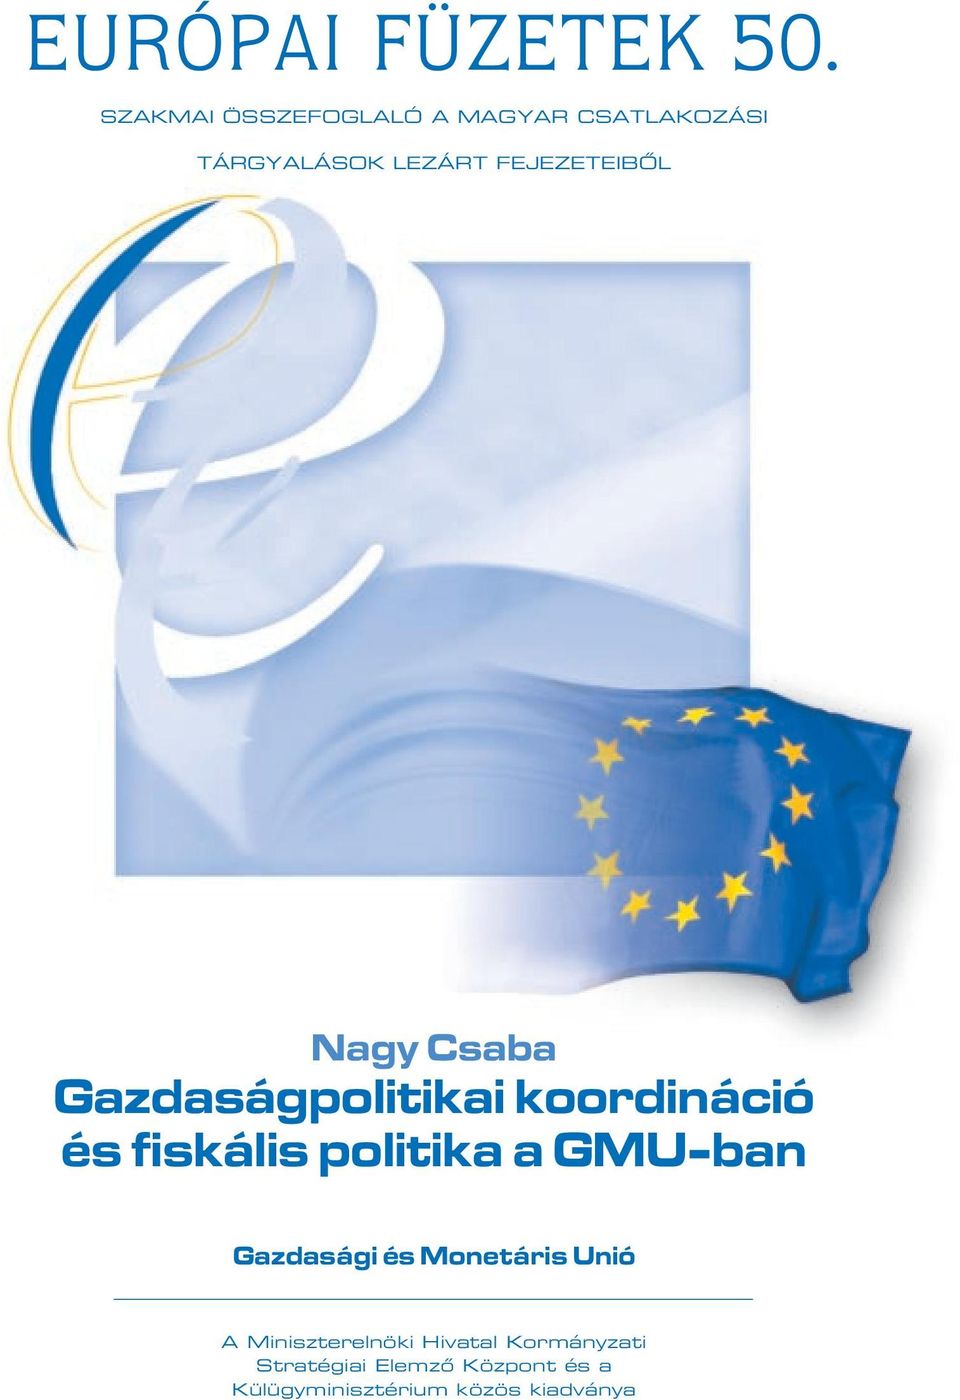 Nagy Csaba Gazdaságpolitikai koordináció és fiskális politika a GMU-ban